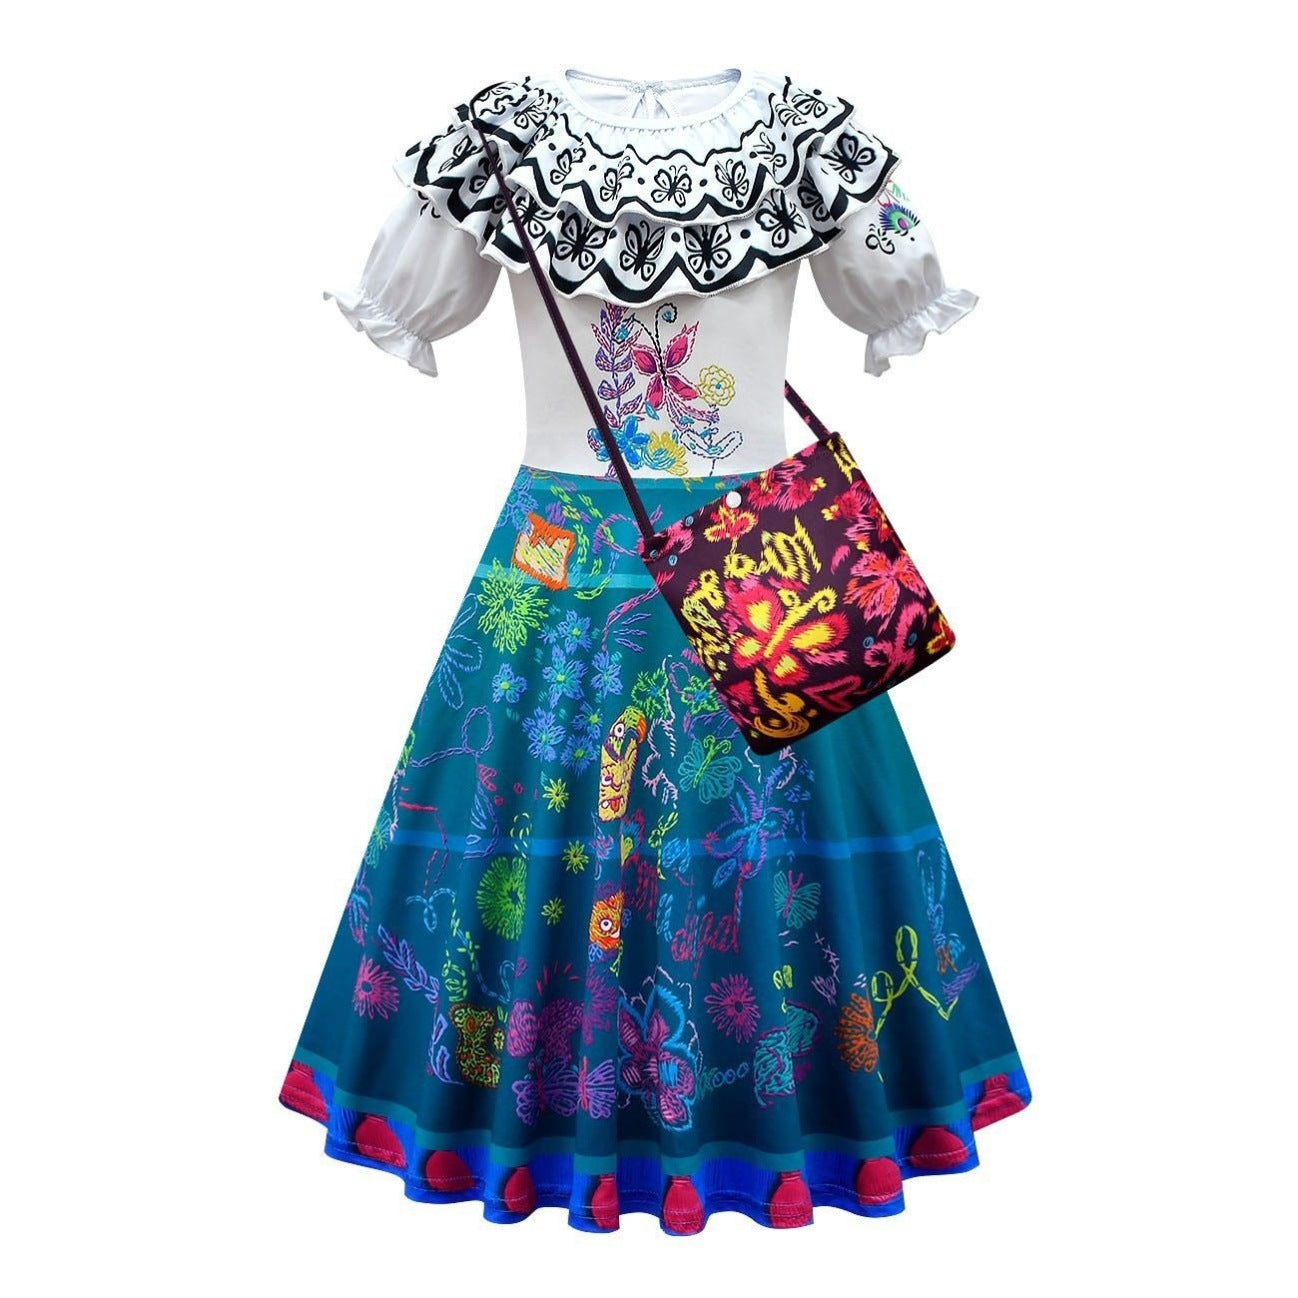 Magic full house series girls dress princess dress 3D digital children's dress